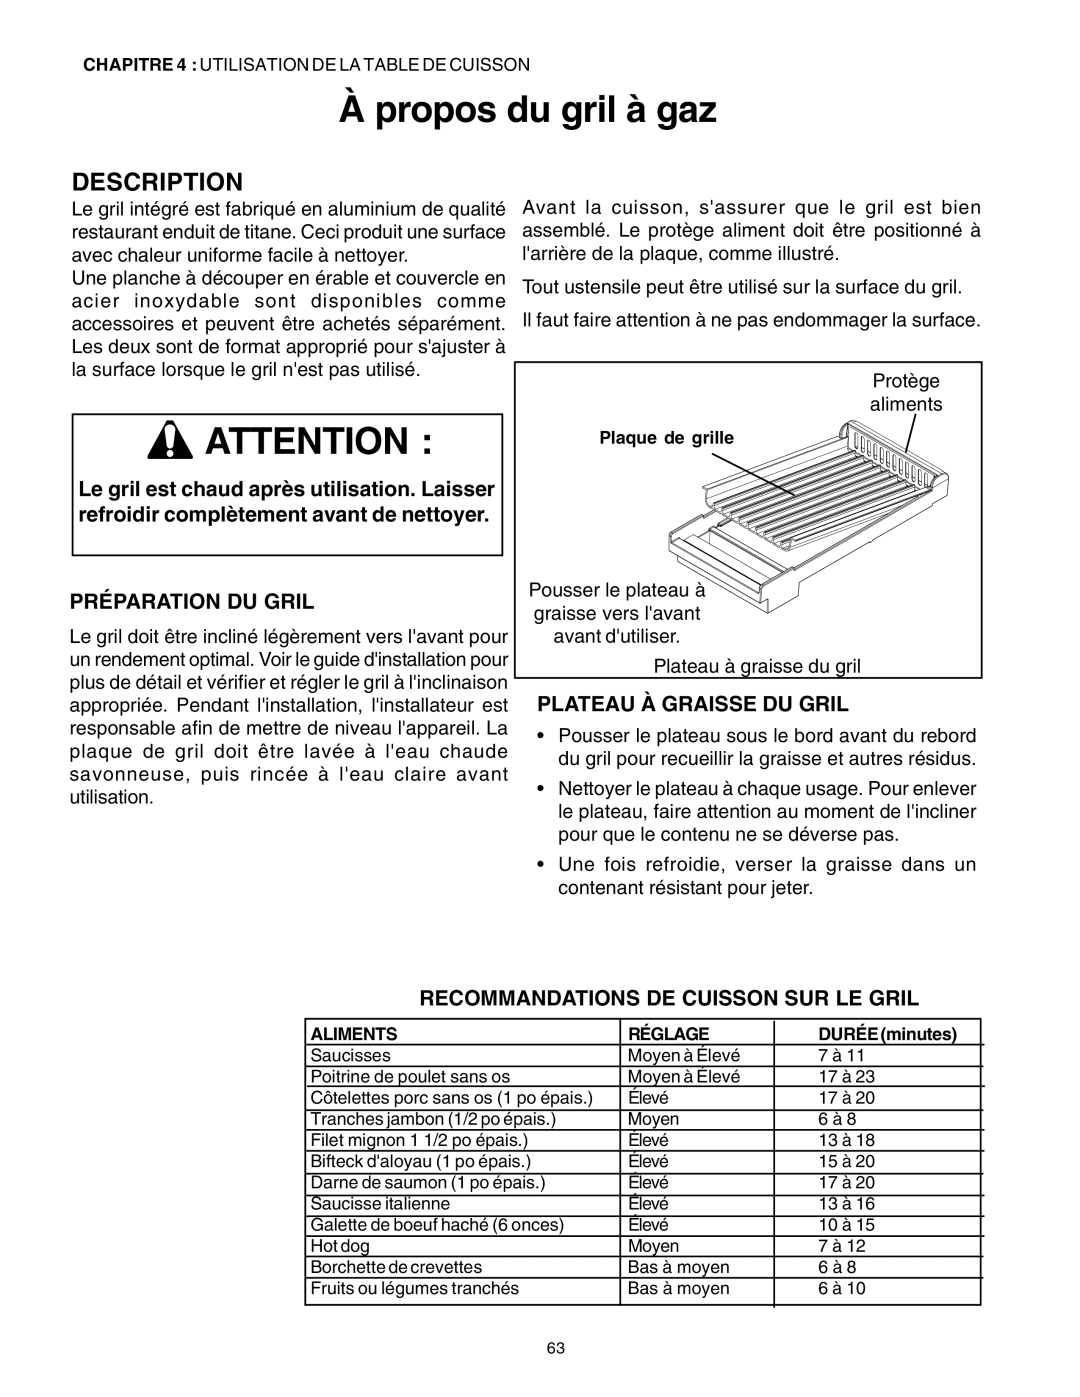 Thermador PRD30, PRD48, PRD36 À propos du gril à gaz, Préparation Du Gril, Plateau À Graisse Du Gril, Description 